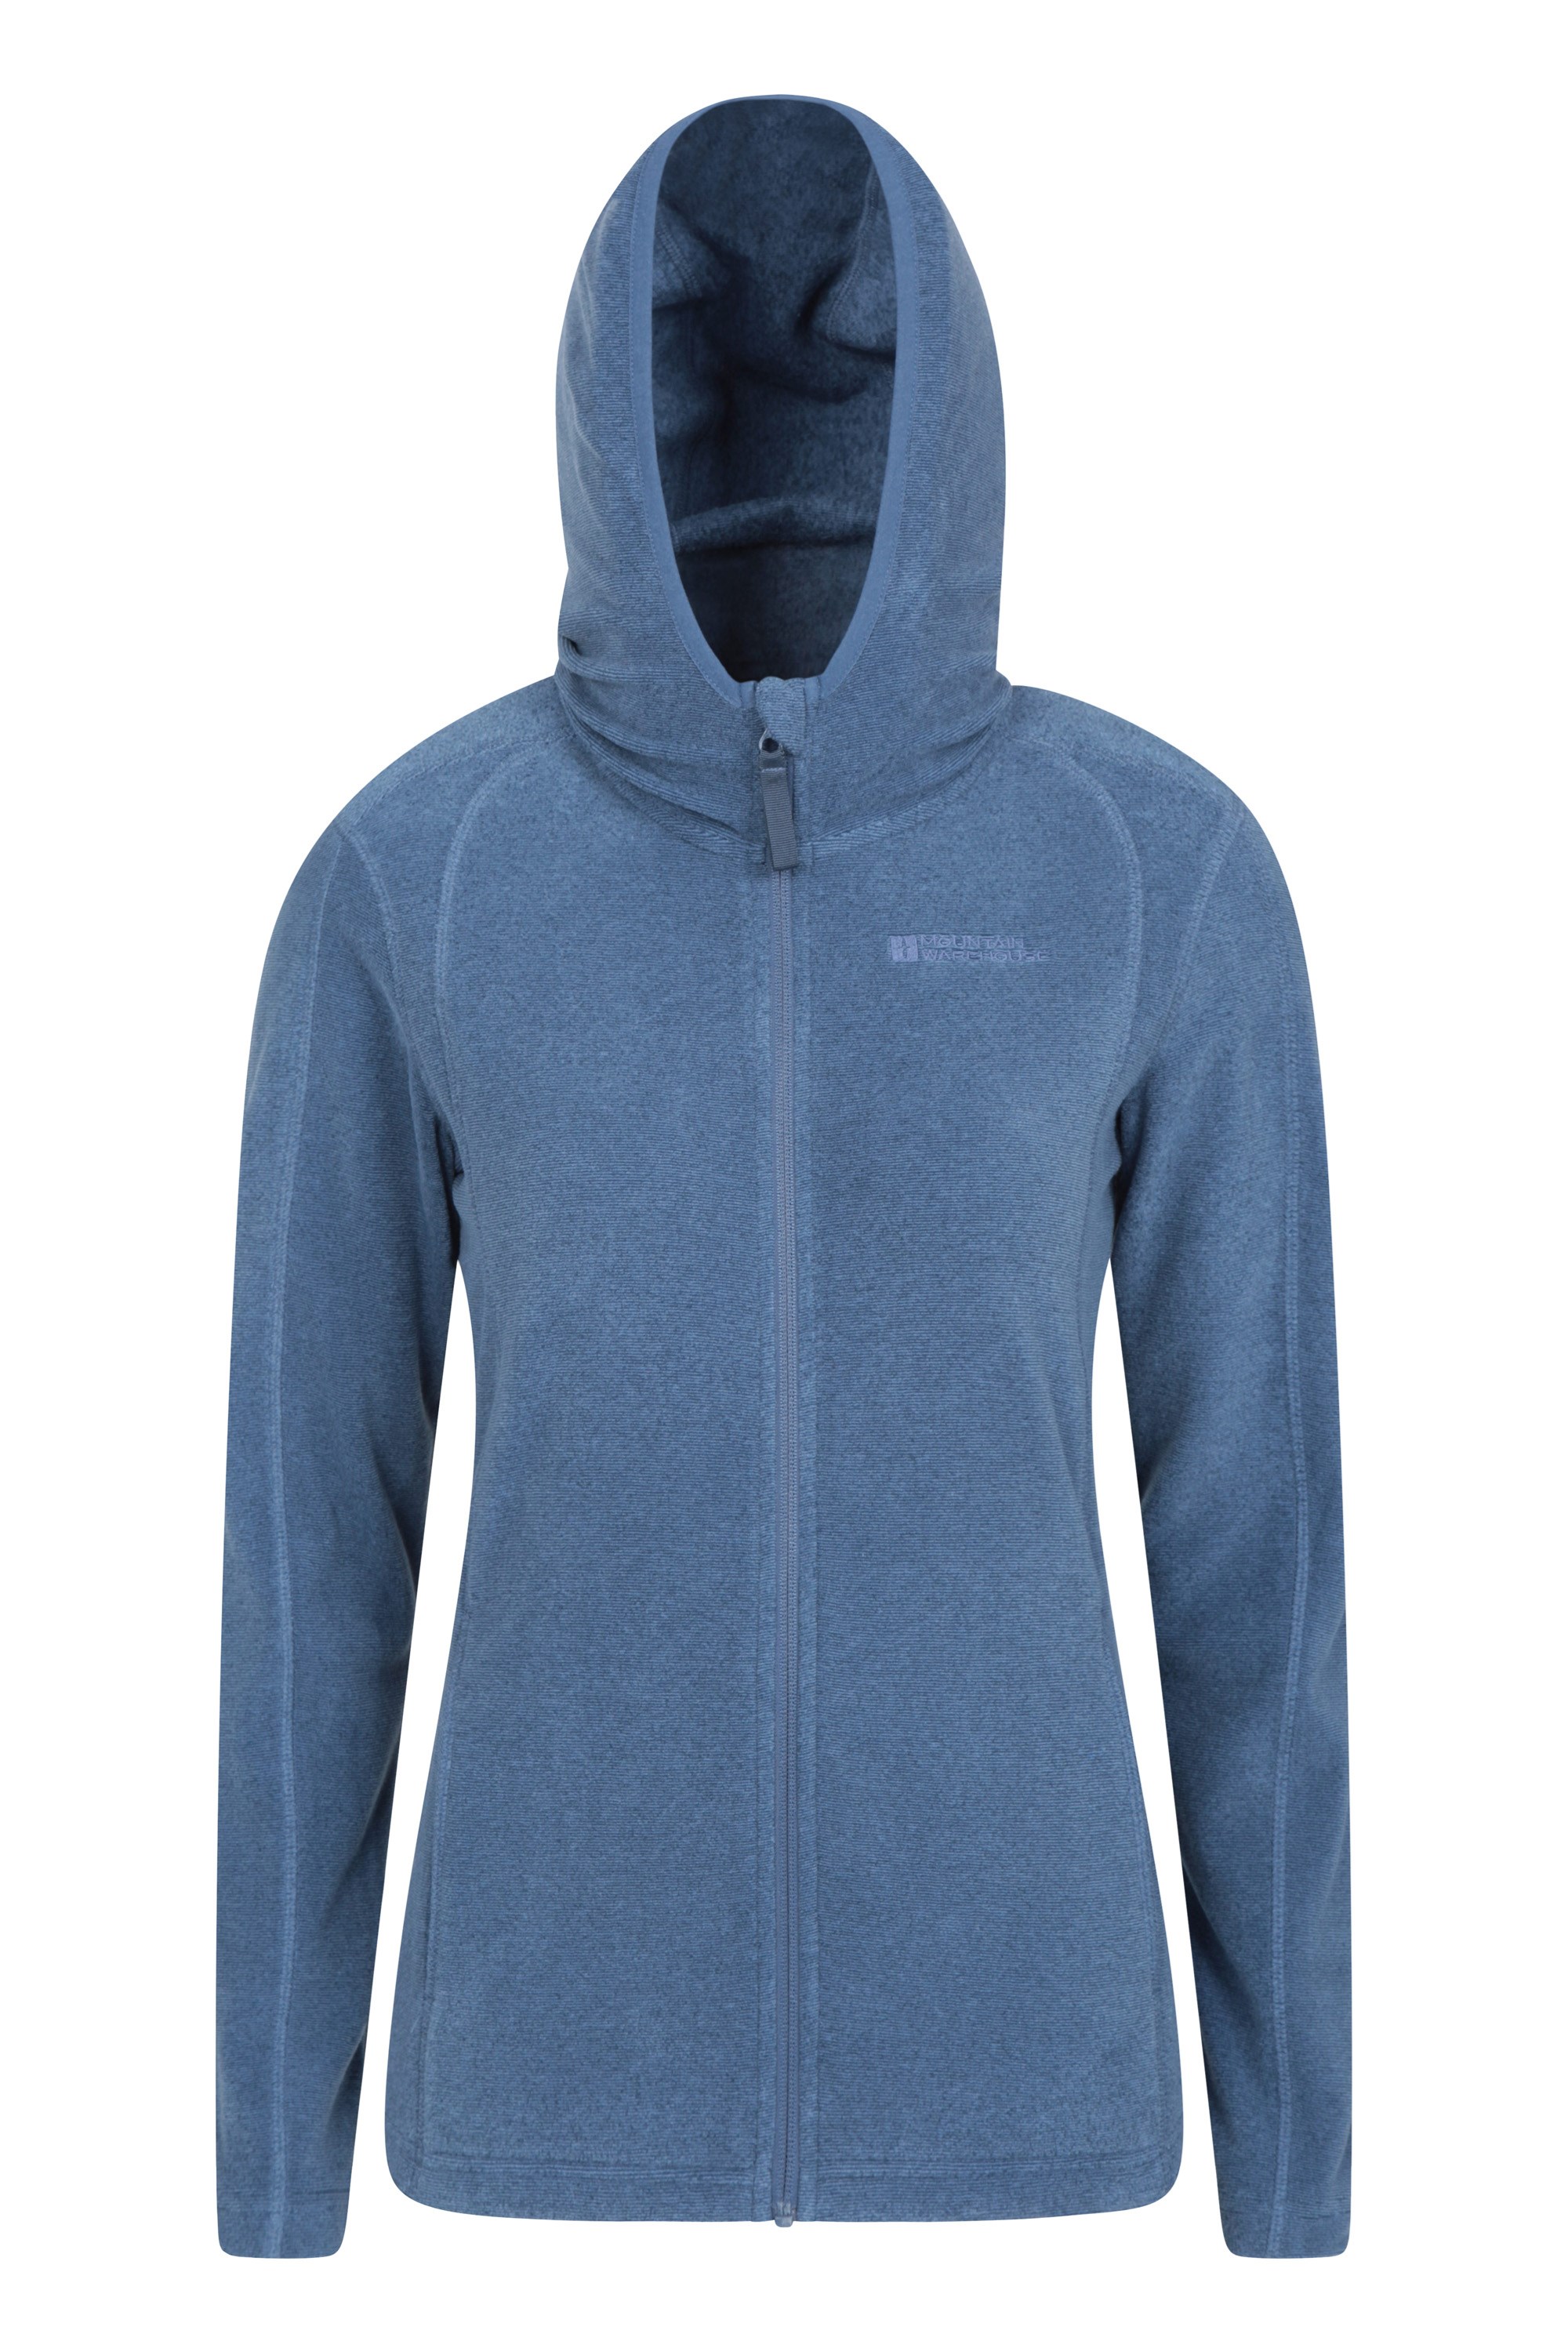 Hebridean Melange Womens Fleece-hoodie - Navy